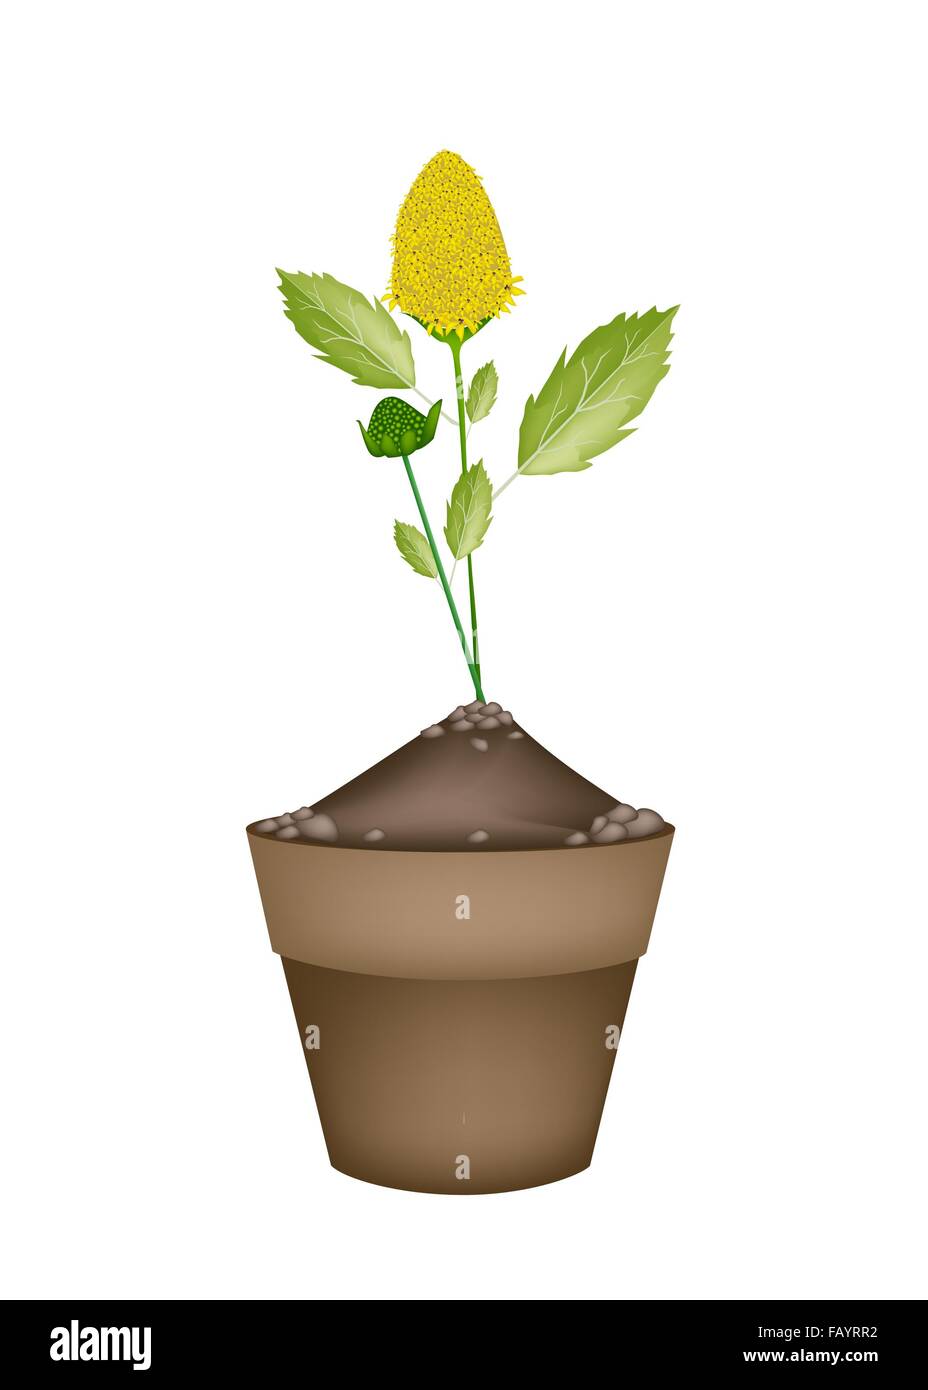 Gemüse- und Kräutergarten, eine Illustration des frischen Parakresse-Pflanze mit schönen gelben Blüte in Terrakotta Blumentöpfe verwendet für Se Stockfoto